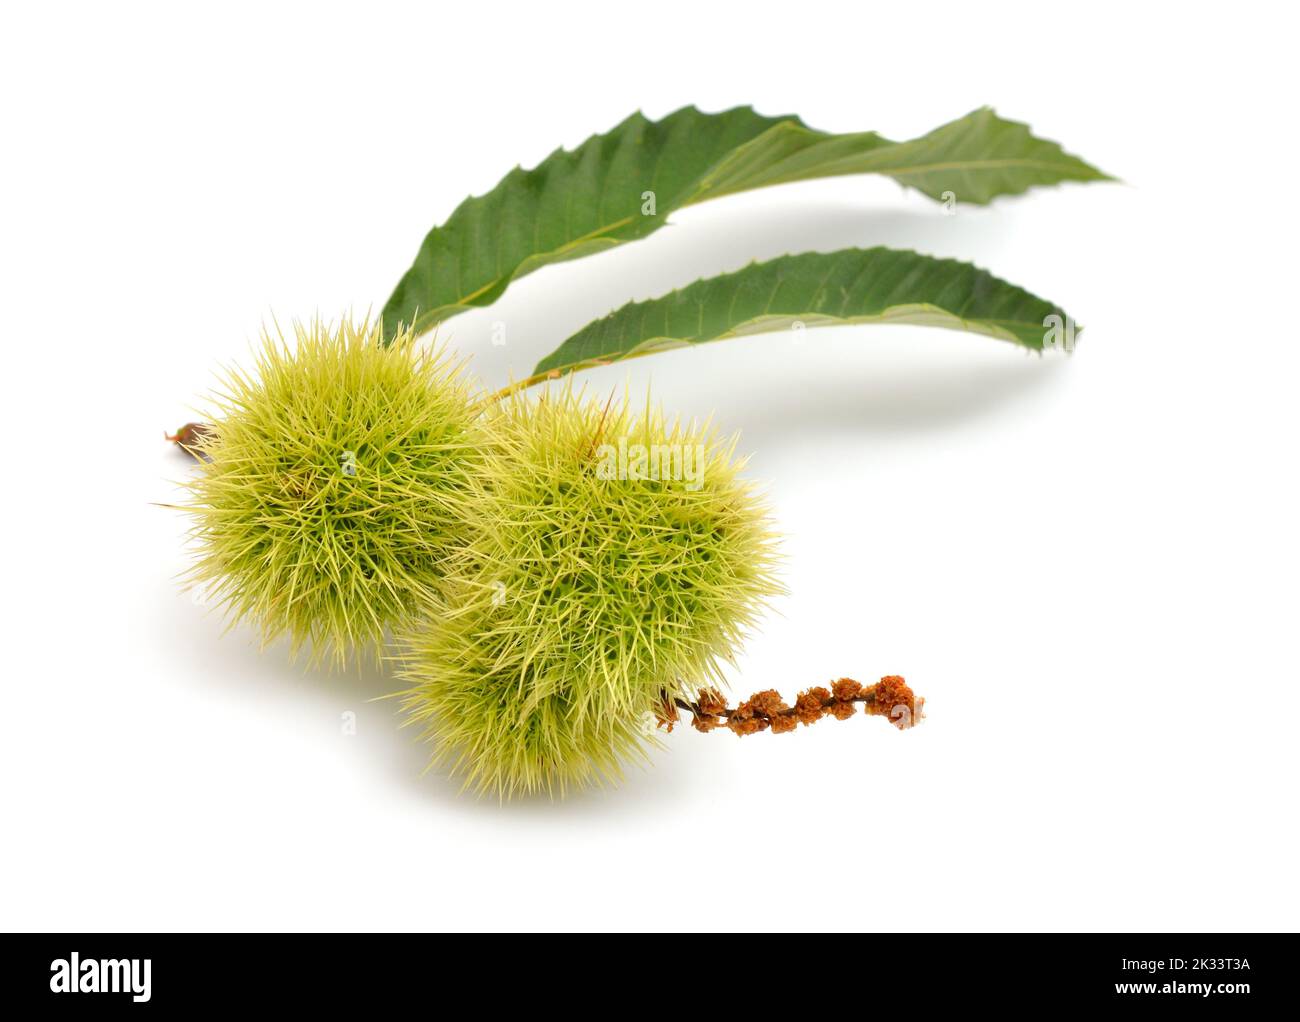 Castanea sativa, or sweet chestnut fruit. Isolated on white background Stock Photo